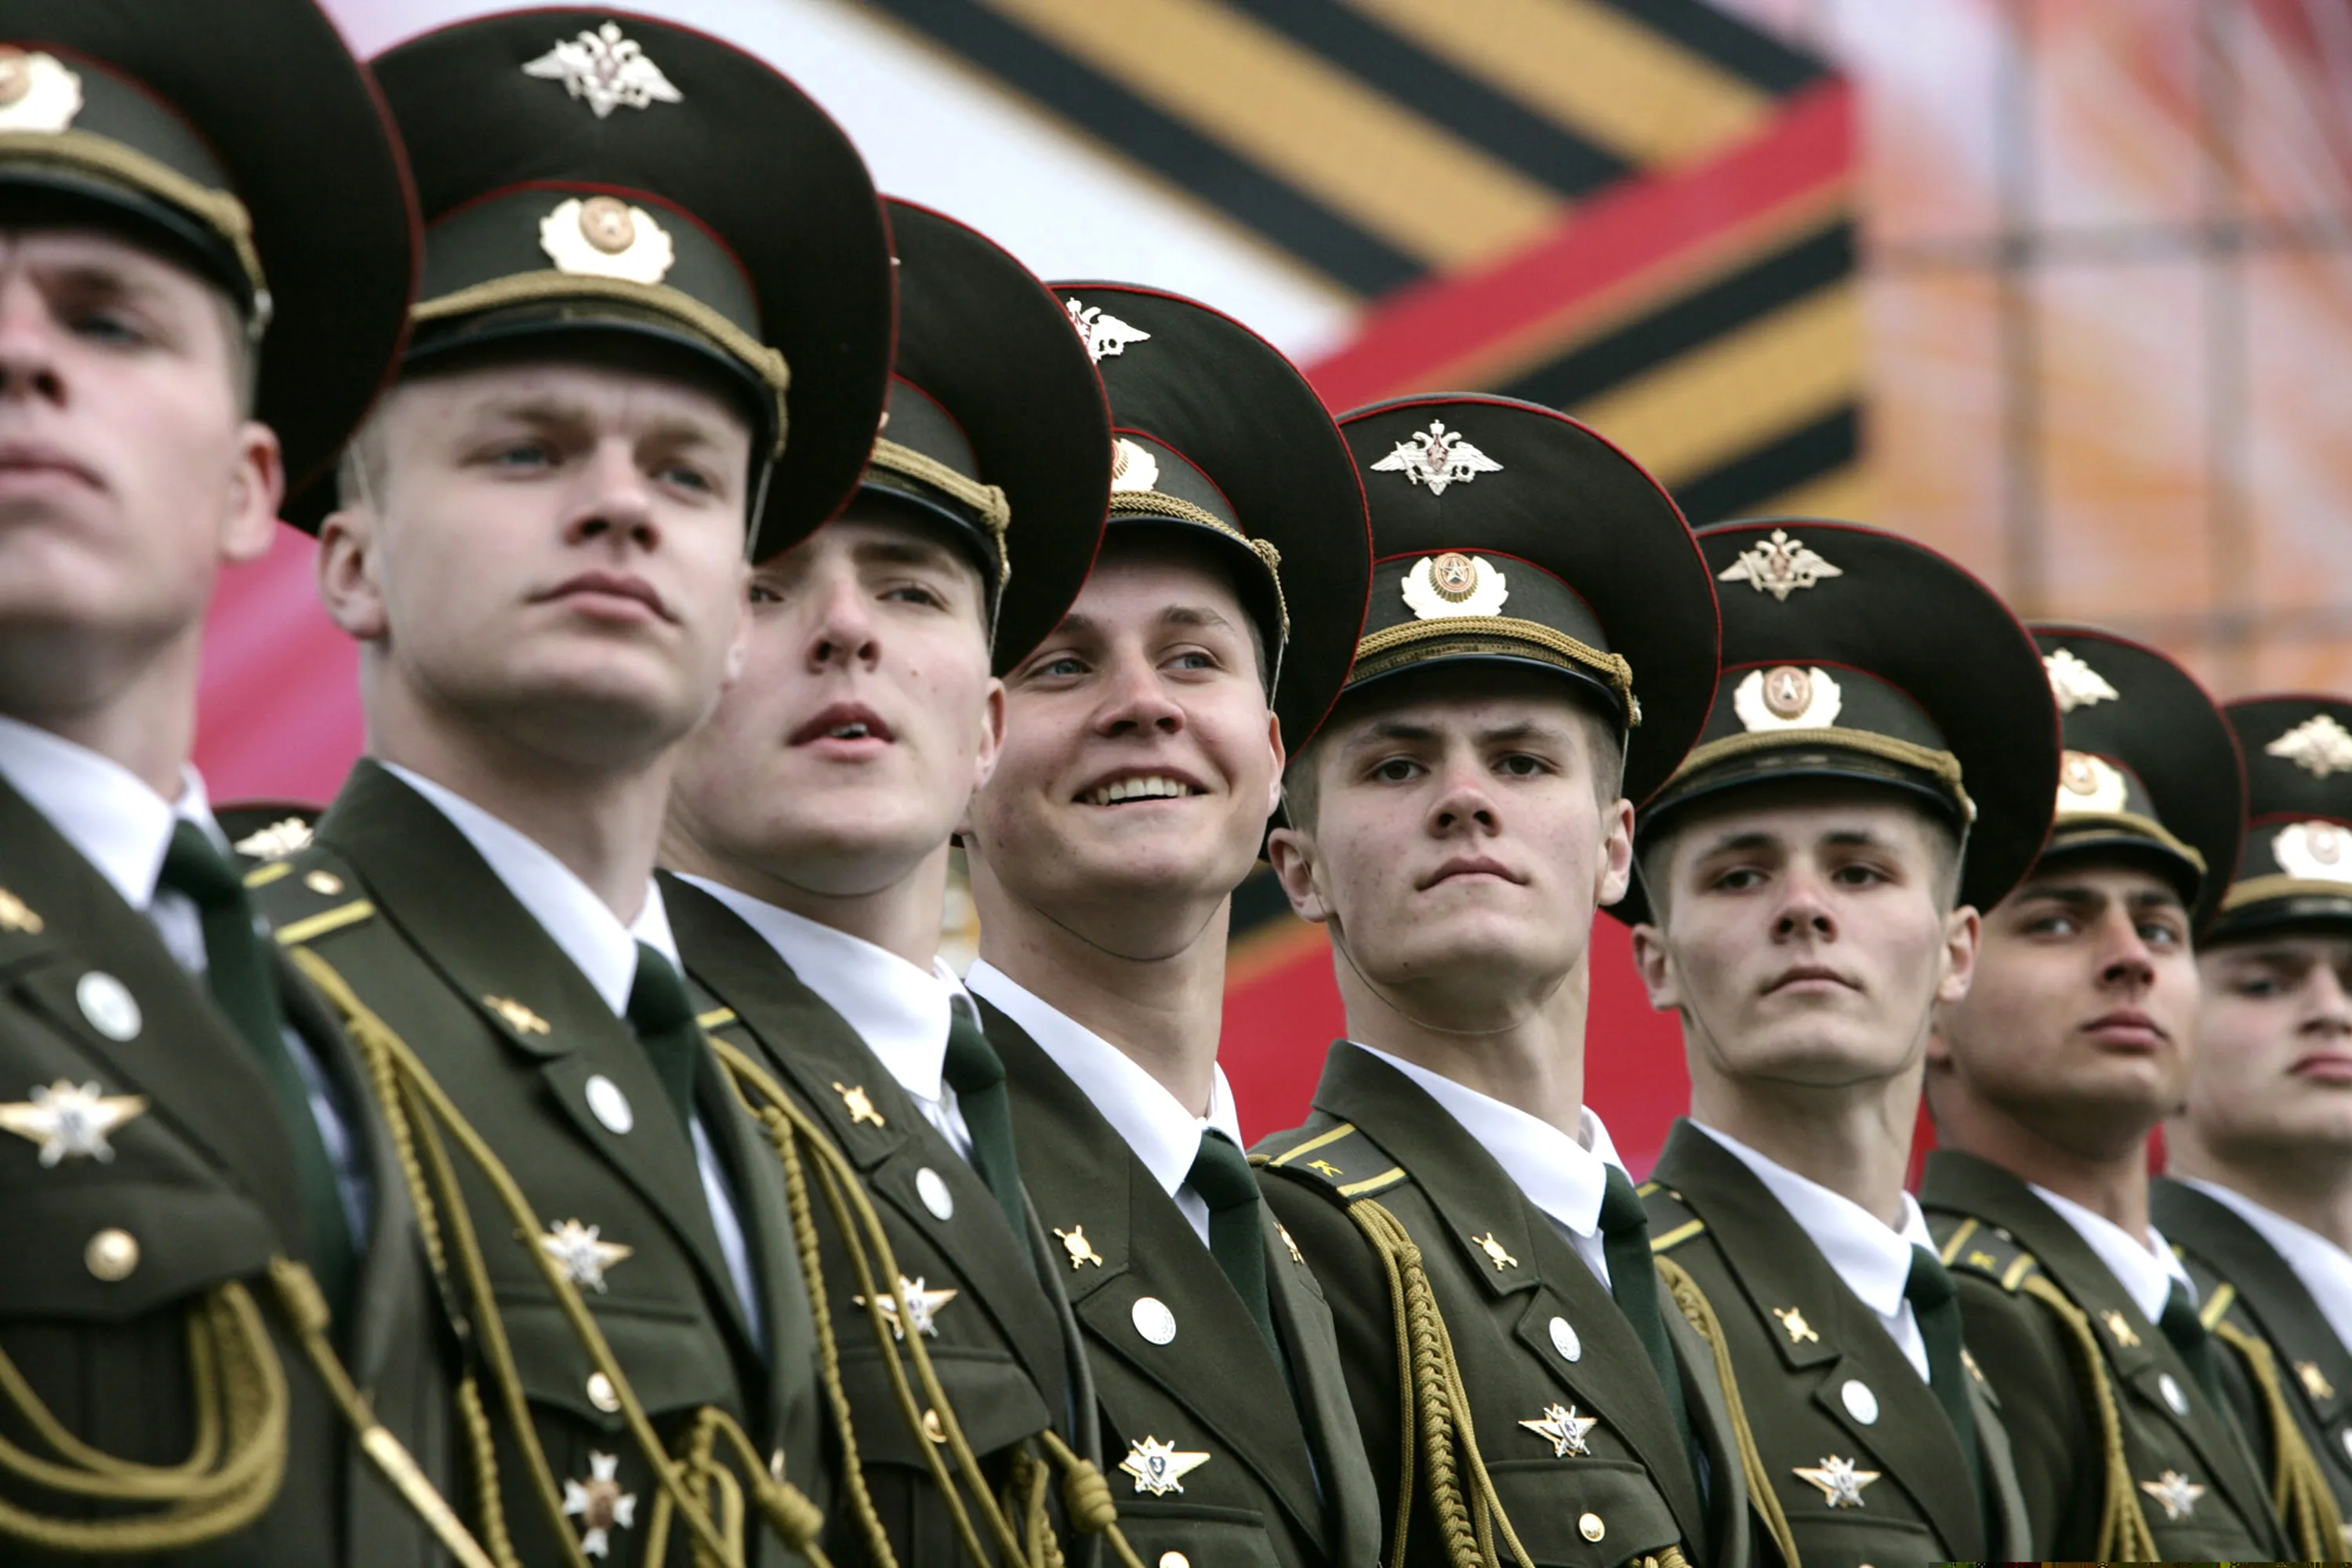 Разные военные формы. Военная форма. Современная Российская Военная форма. Солдаты на параде. Красивый офицер.